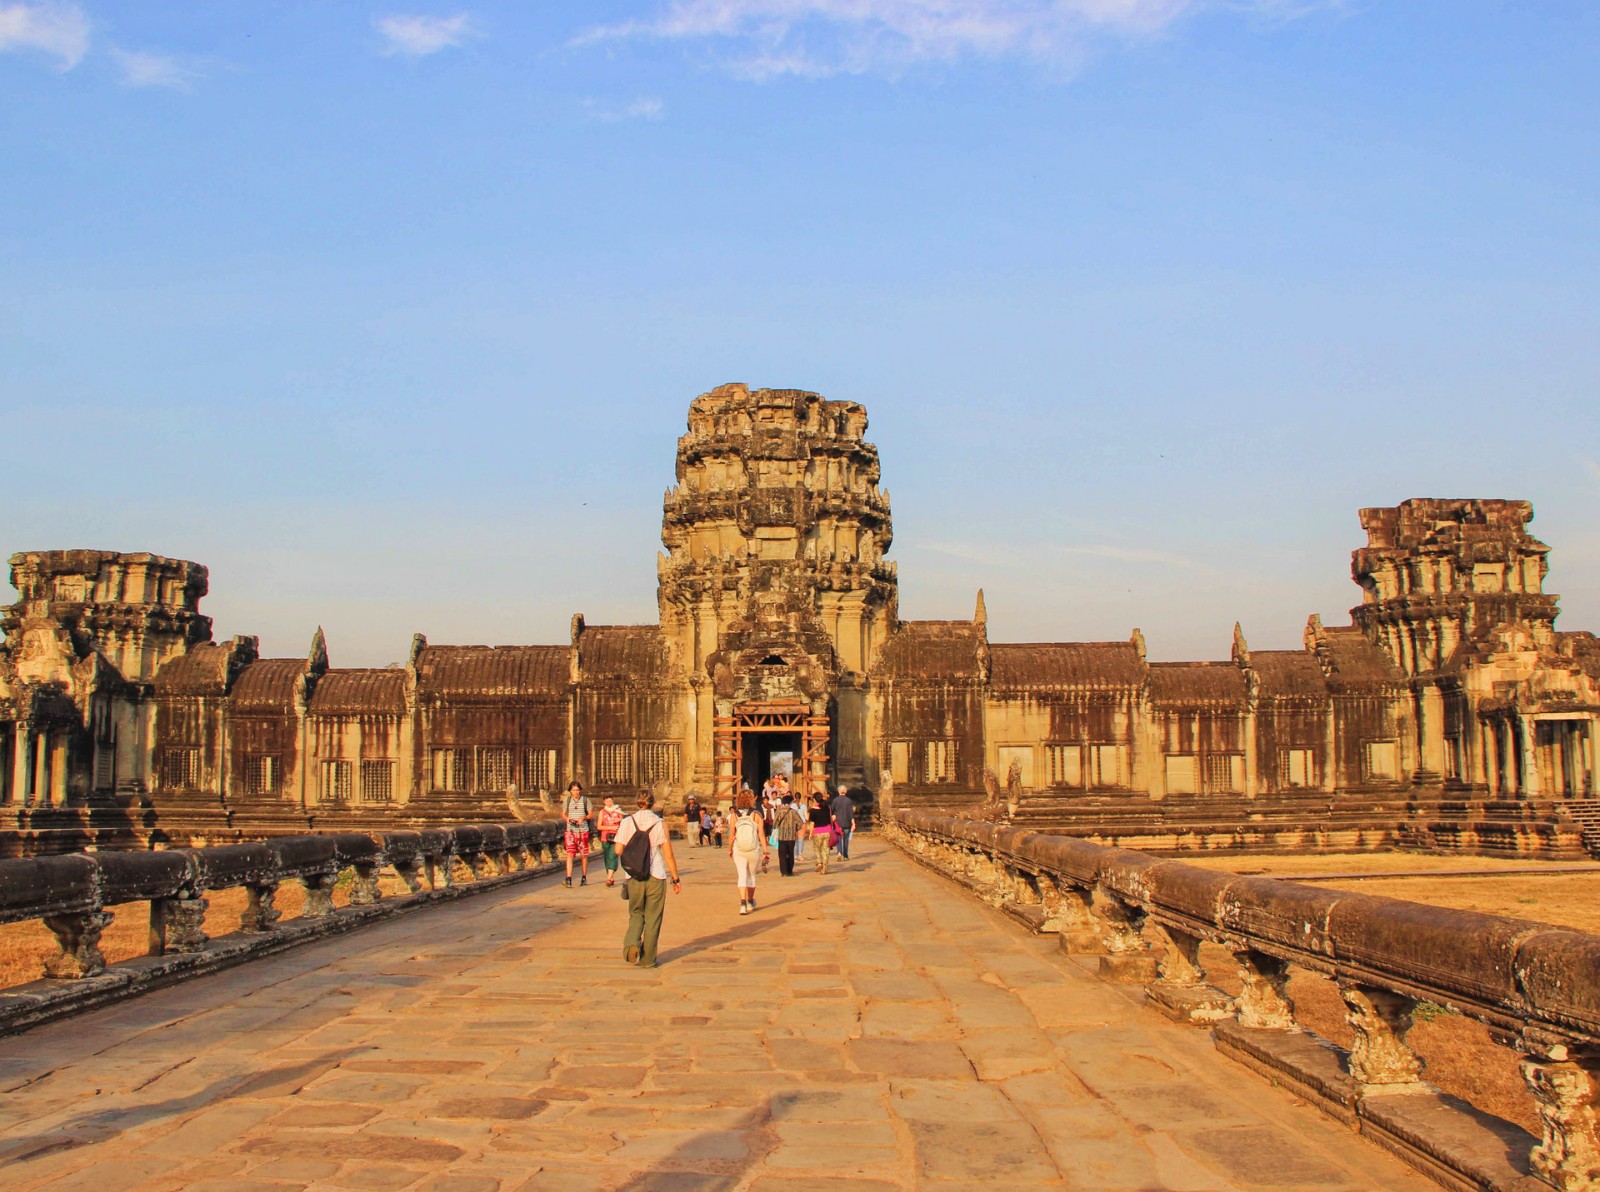 门票收入增长 柬埔寨吴哥古迹旅游复苏